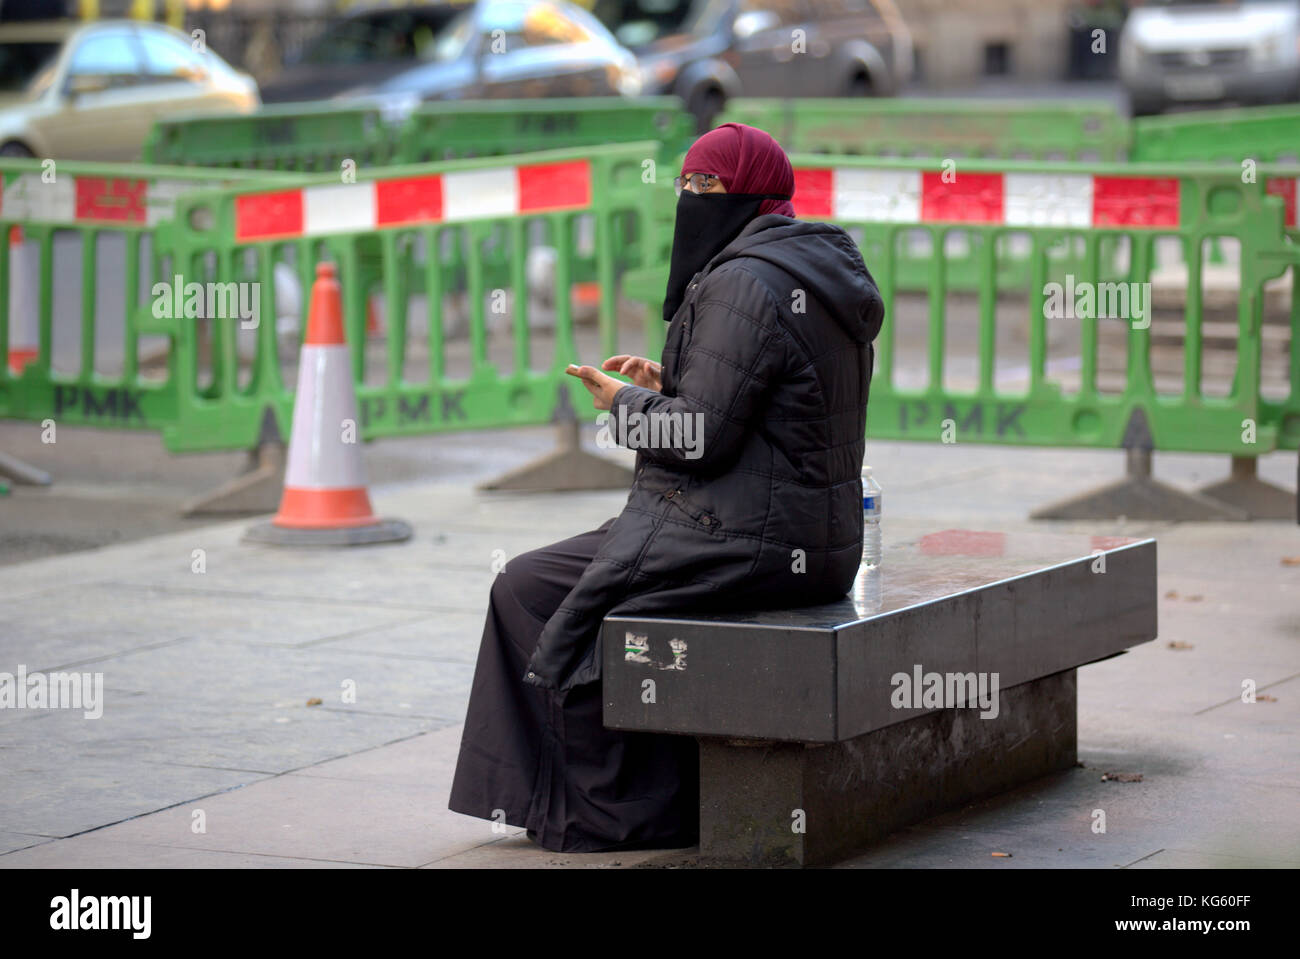 Asiatische Frauen Mädchen Flüchtling hijab Schal auf der Straße in der britischen muslimischen moslemischen mit Smartphone sitzt auf der Bank Street mit Warnung Verkehr Barrieren Gefahr Stockfoto